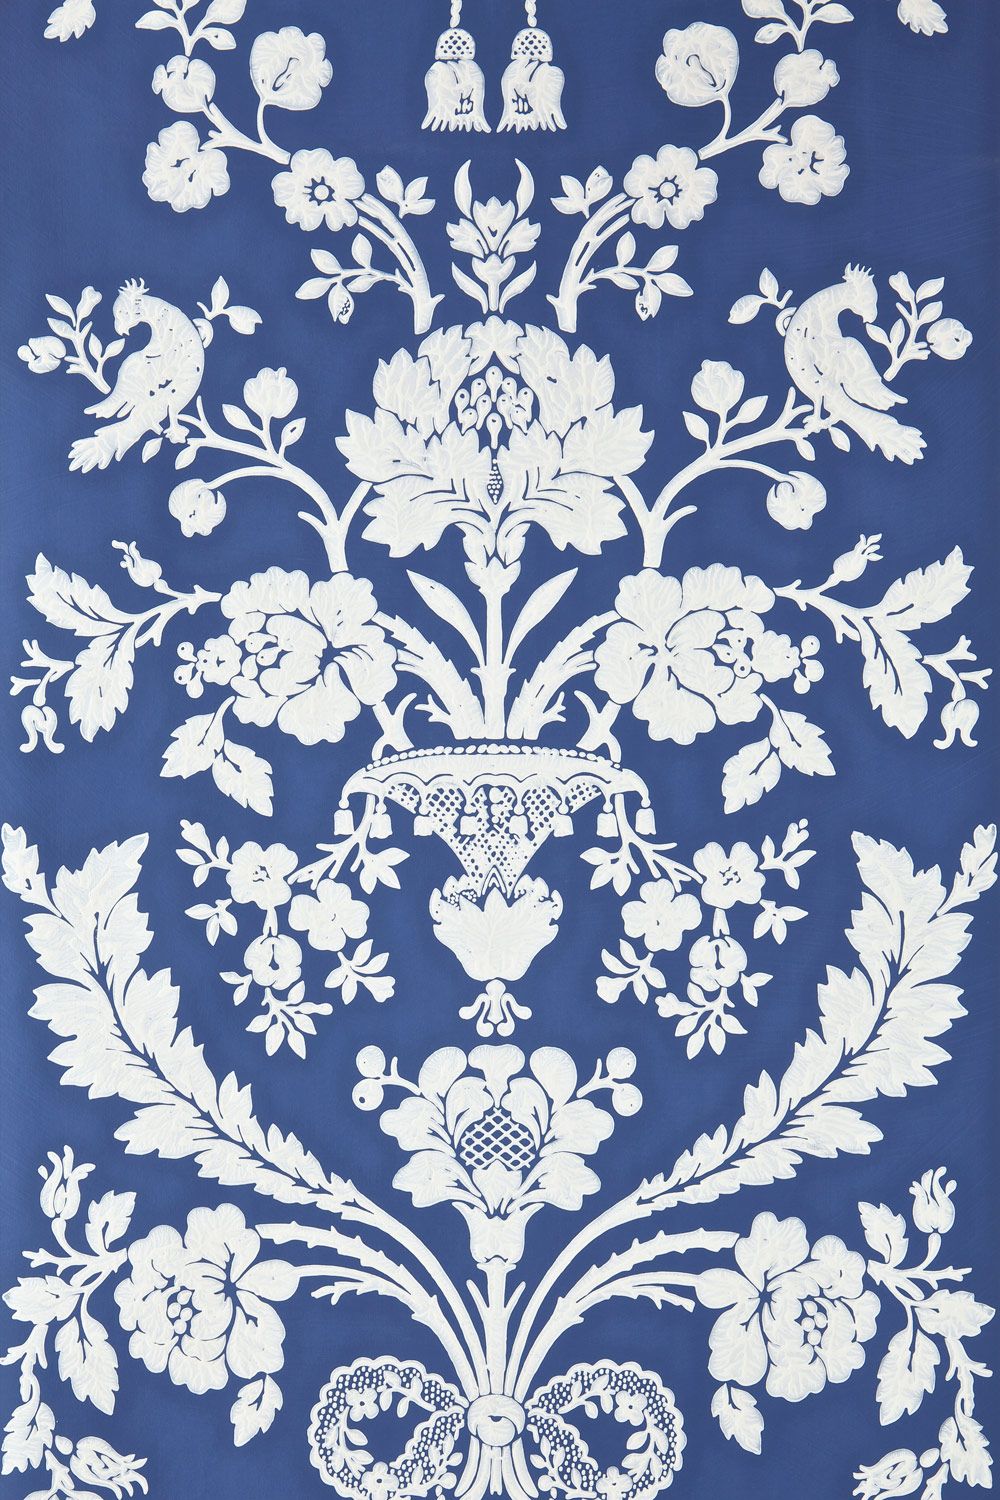 papel pintado del siglo xviii,modelo,diseño,textil,diseño floral,artes visuales